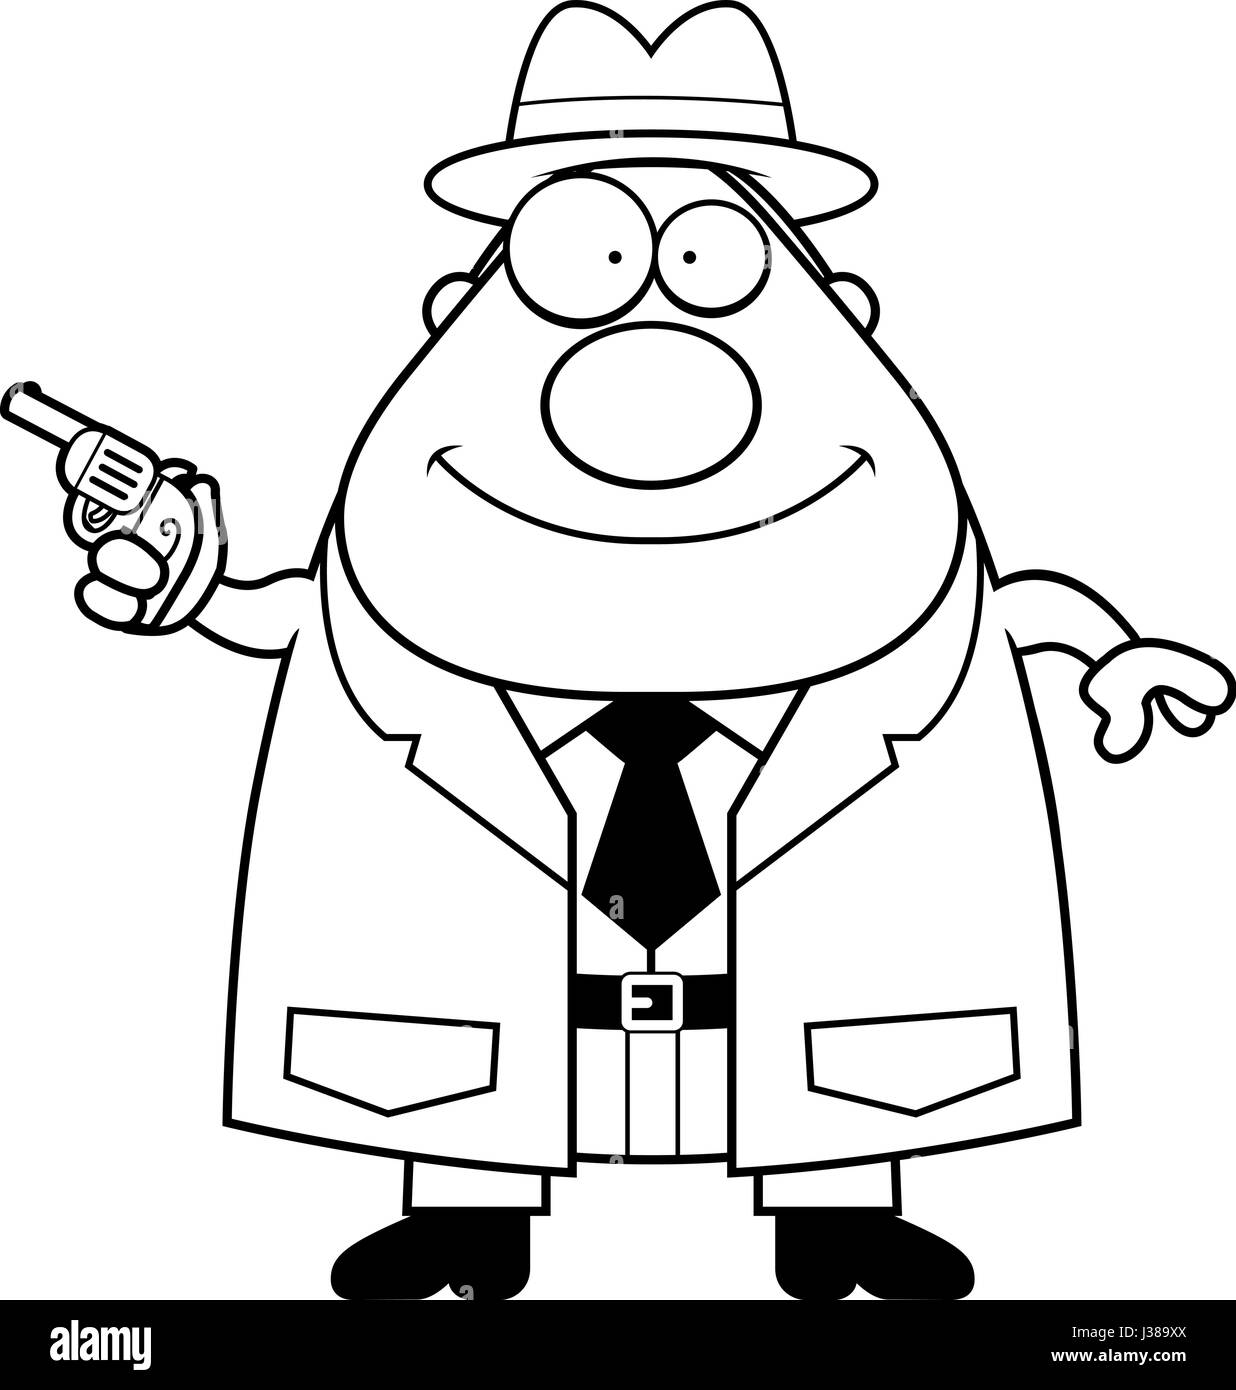 Eine Karikatur Illustration eines Detektivs mit einer Pistole. Stock Vektor